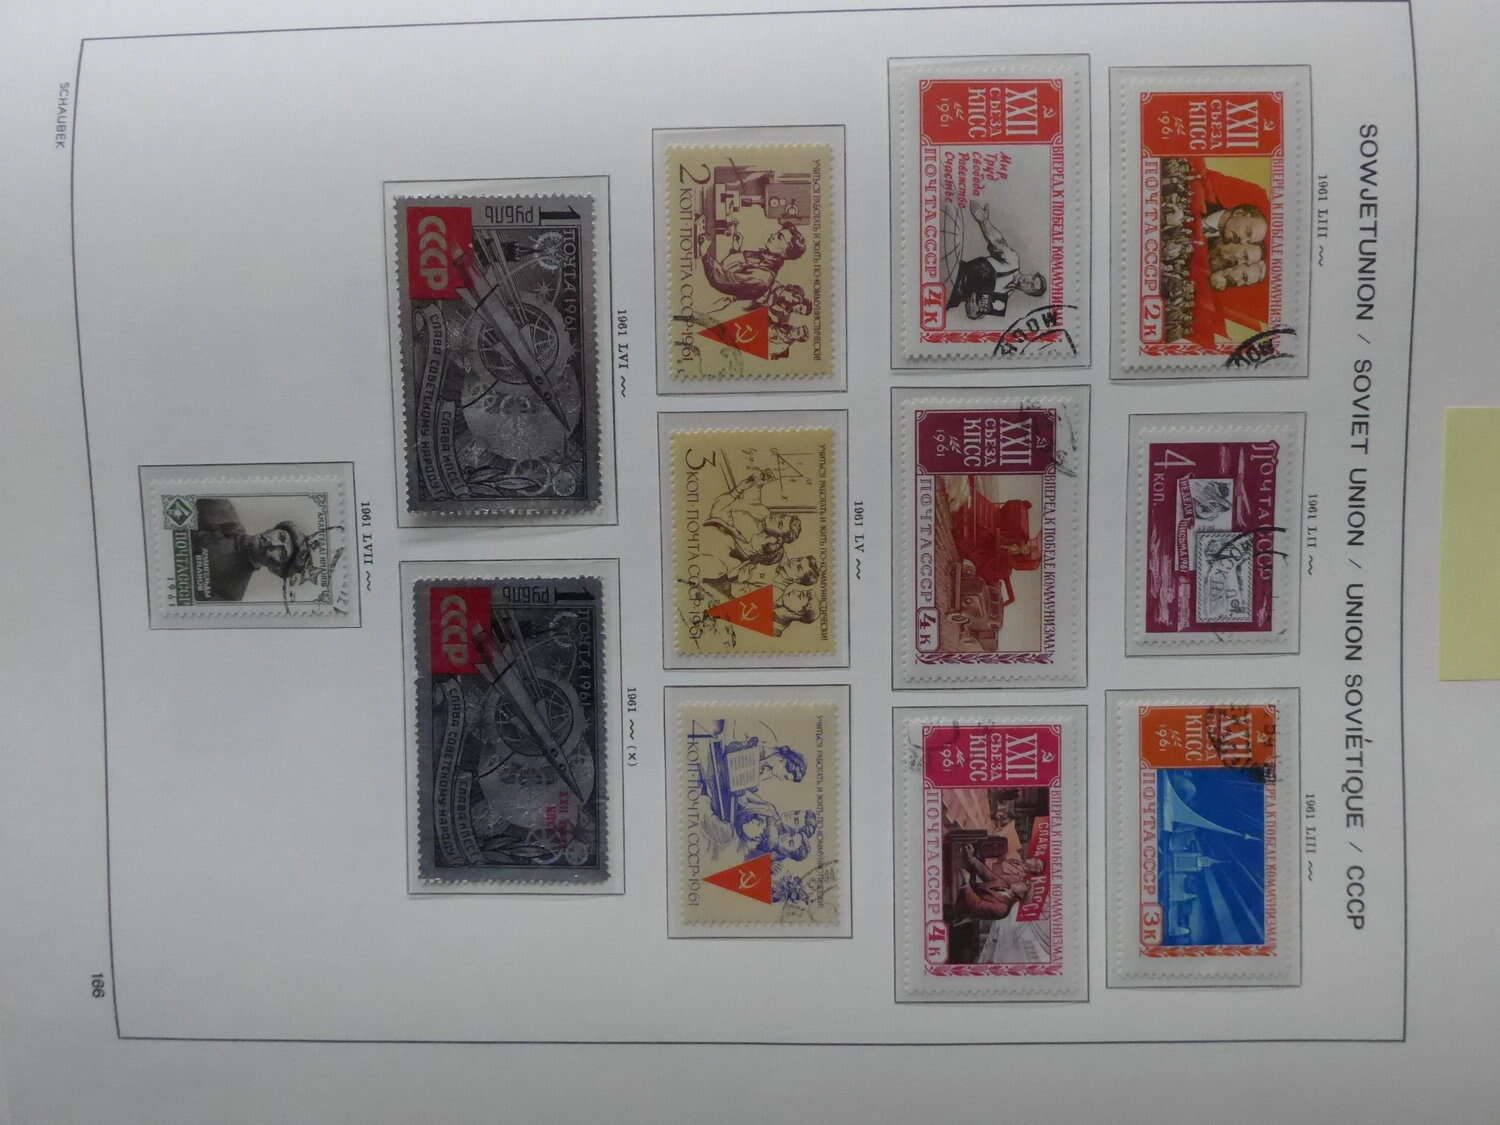 Lot 6 - sammlungen und posten sammlernachlässe -  Deutsche Briefmarken AG 6th Large Lot Auction Deutsche Briefmarken AG